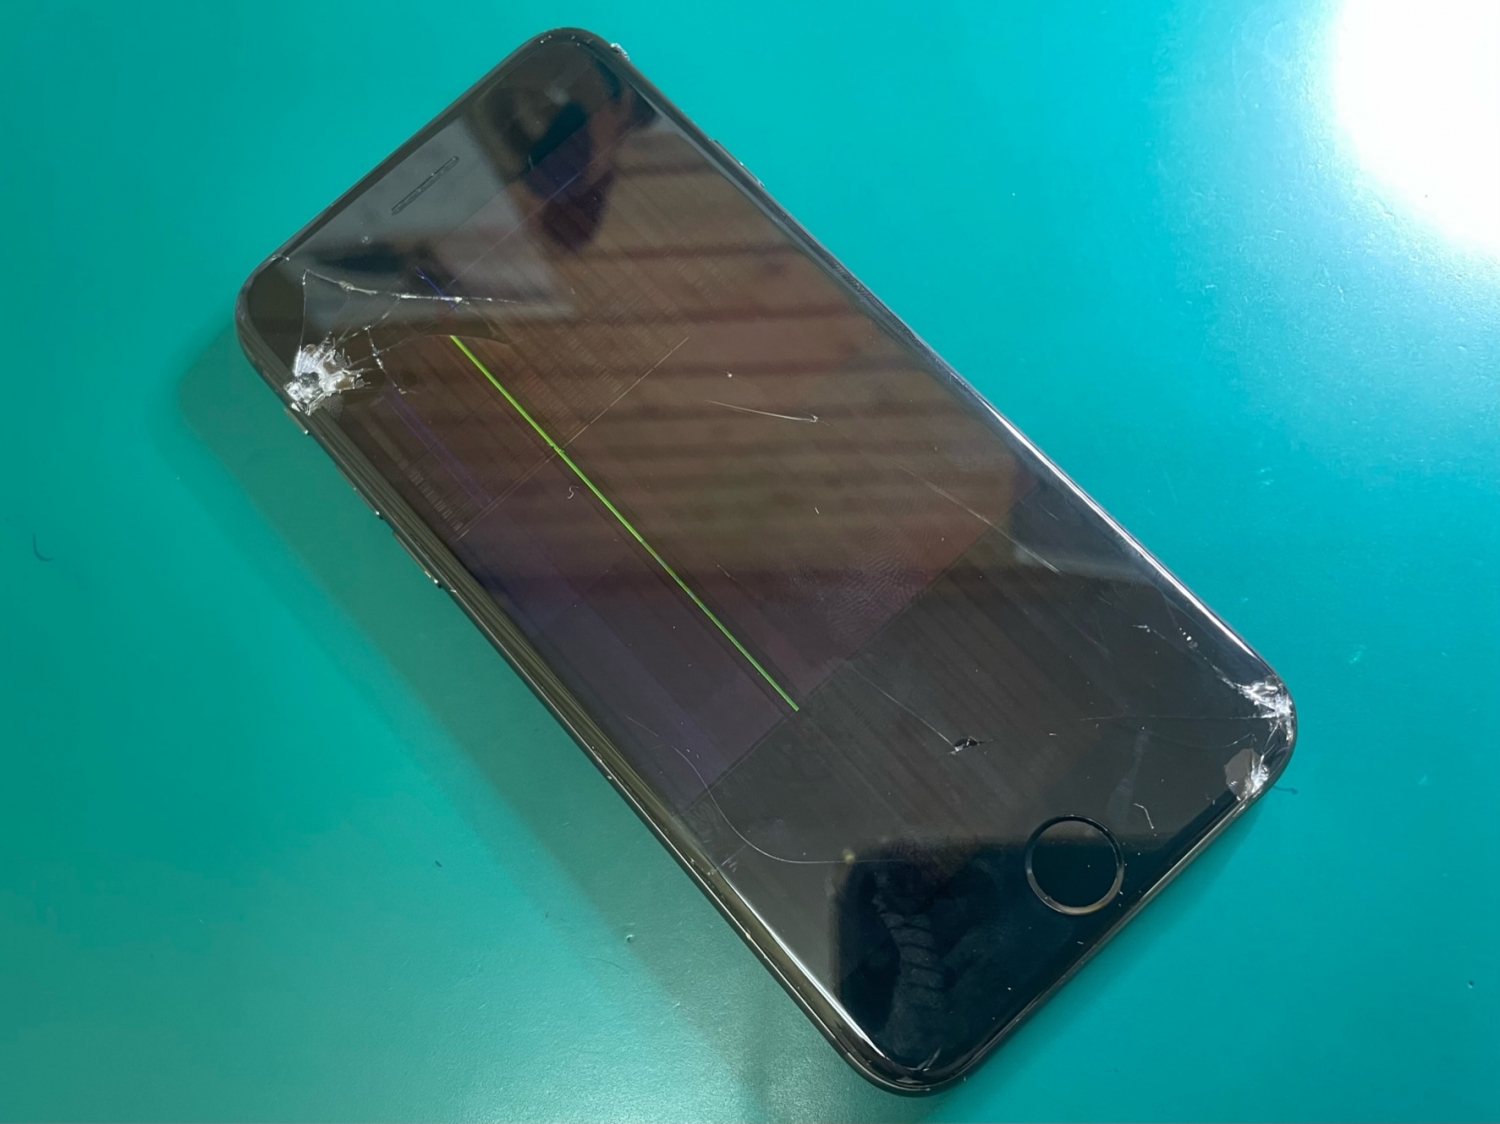 落としてガラス割れ＋液晶表示の異常が発生してしまったiPhone修理のご依頼をいただきました。